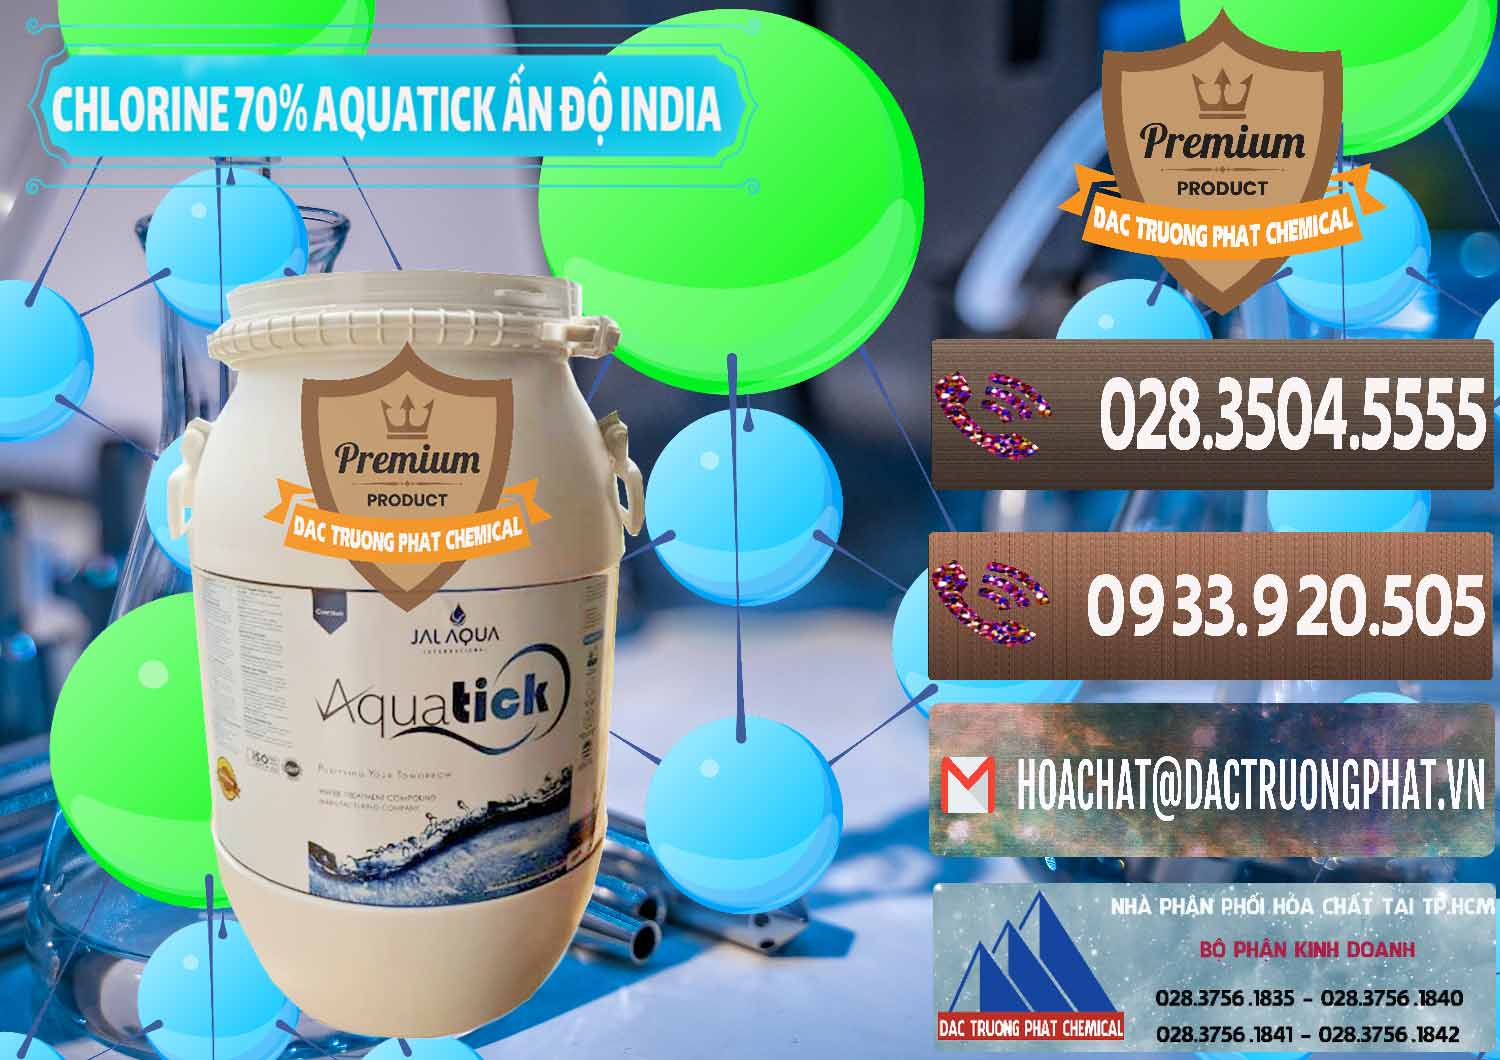 Nơi chuyên bán ( cung ứng ) Chlorine – Clorin 70% Aquatick Jal Aqua Ấn Độ India - 0215 - Nơi bán và phân phối hóa chất tại TP.HCM - hoachatviet.net